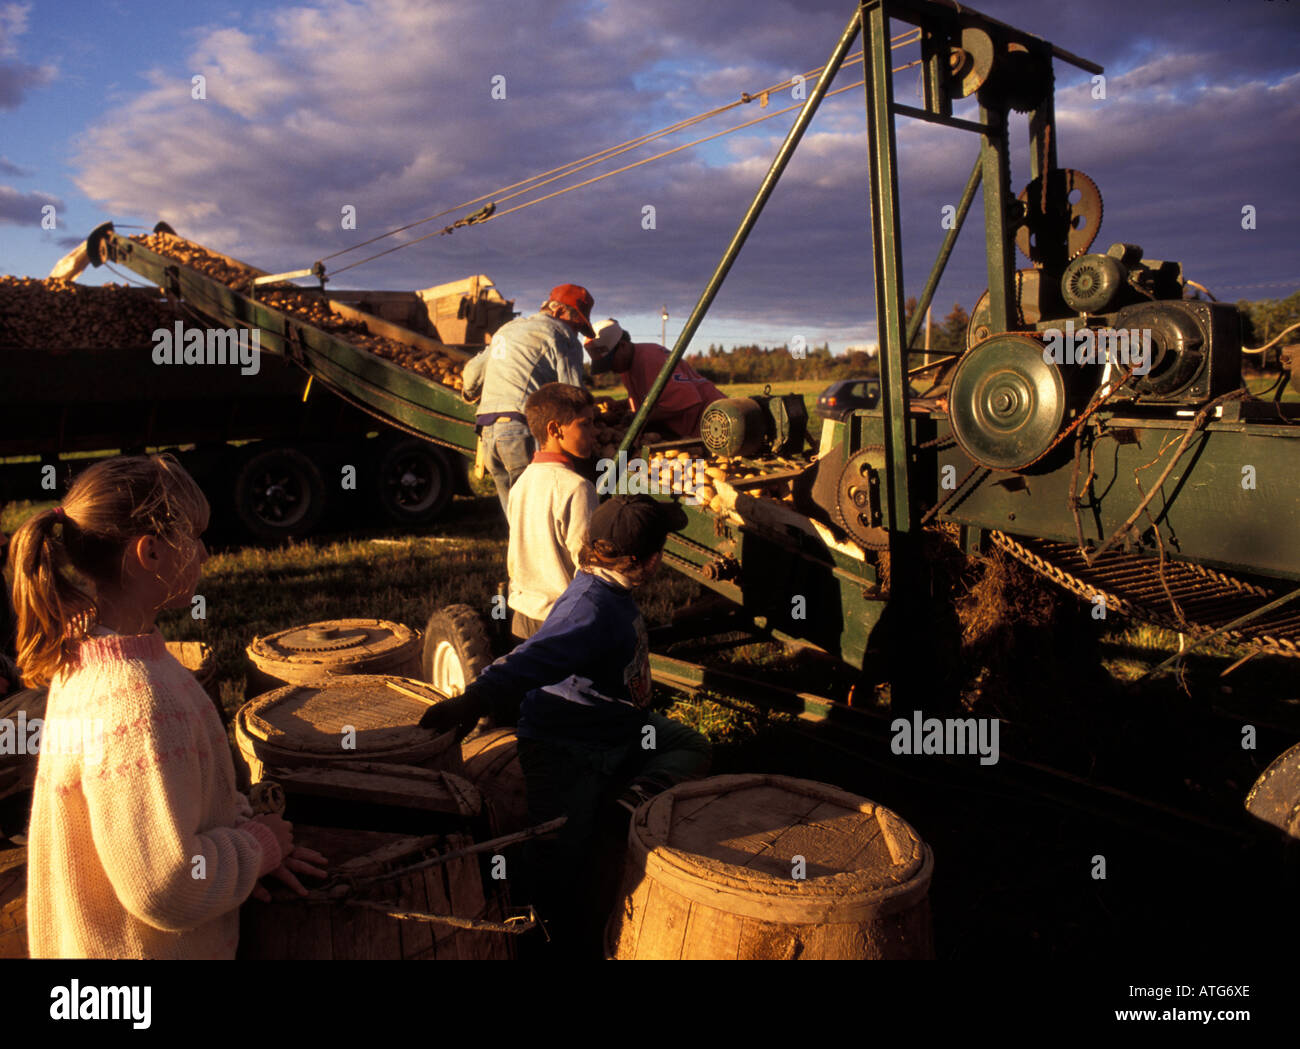 Immagine di stock di ragazzi e ragazze per aiutare durante la caduta di patate utilizzando harest barili per la raccolta a mano Foto Stock